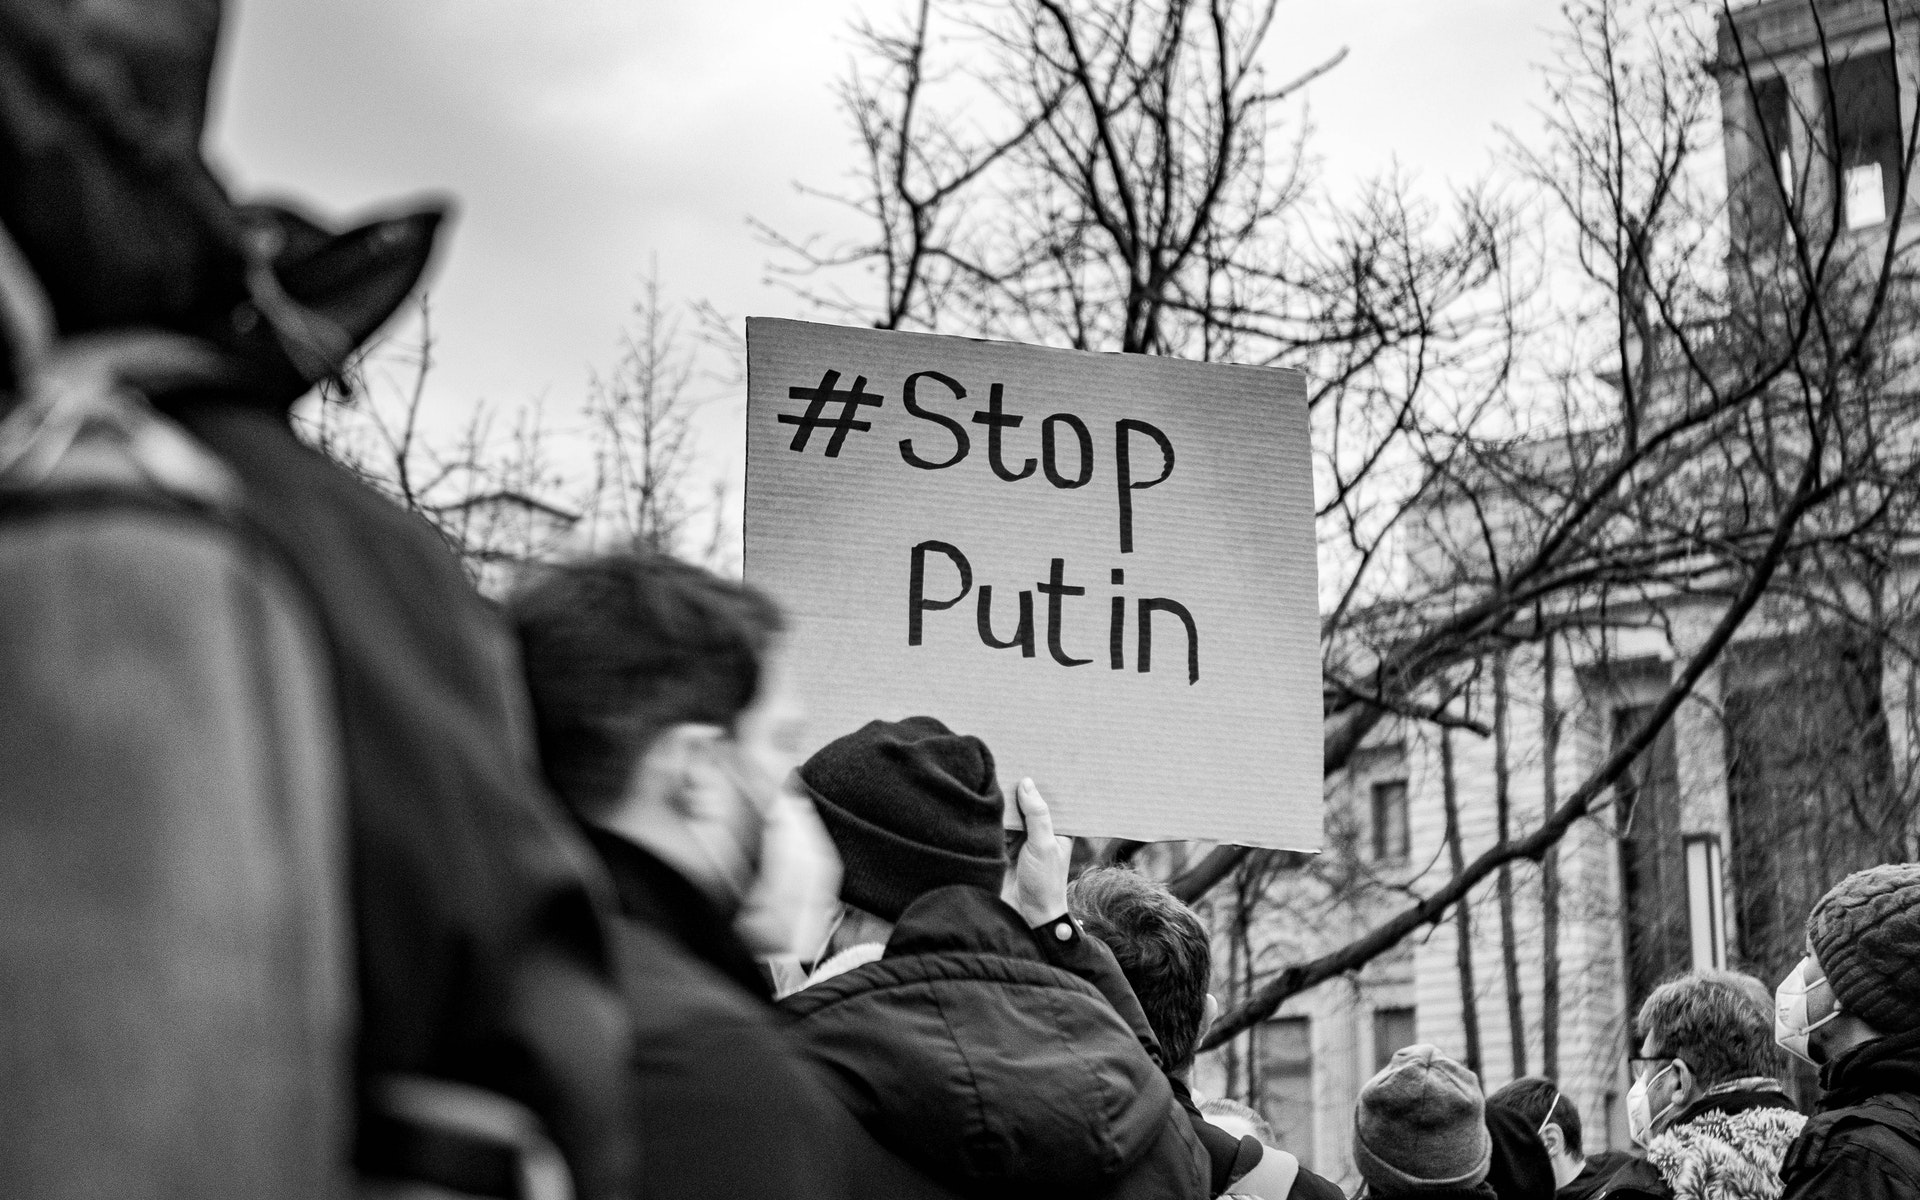 Stop Putin